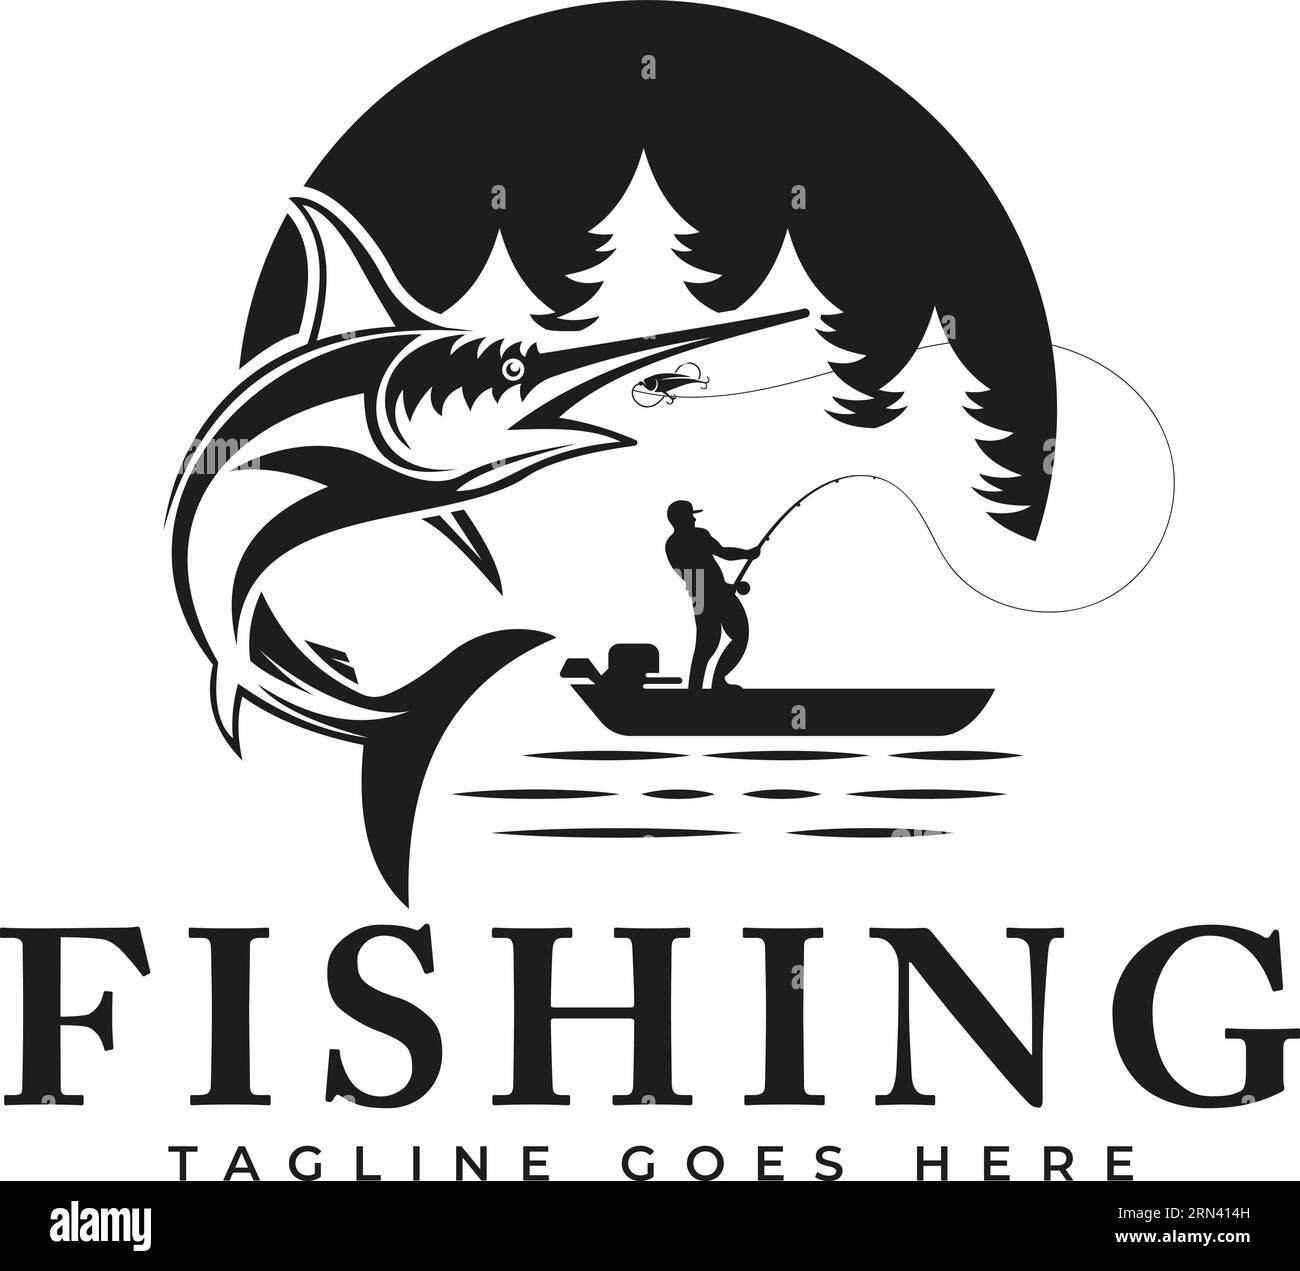 Illustration de modèle de conception de pêche Swordfish sautant hors de l'eau, adapté à l'utilisation comme activité de pêche. Logo de pêche sportive Illustration de Vecteur